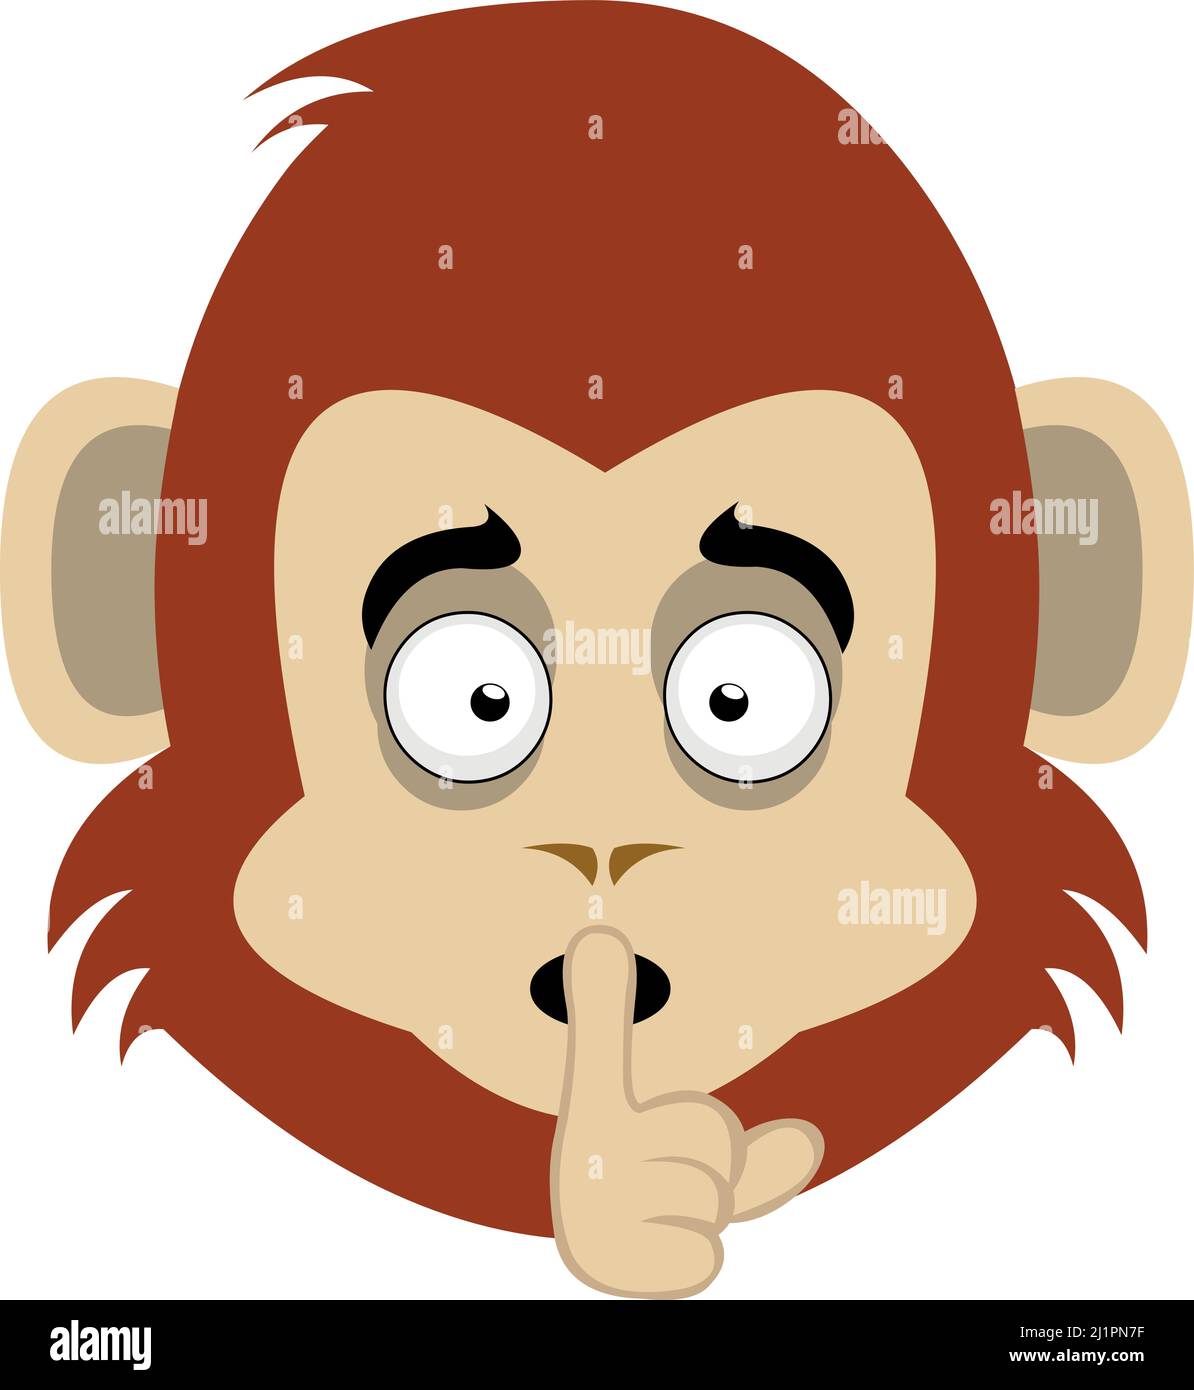 Illustration vectorielle du visage d'un singe cartoon, demandant le silence avec l'index de la main reposant sur la bouche Illustration de Vecteur